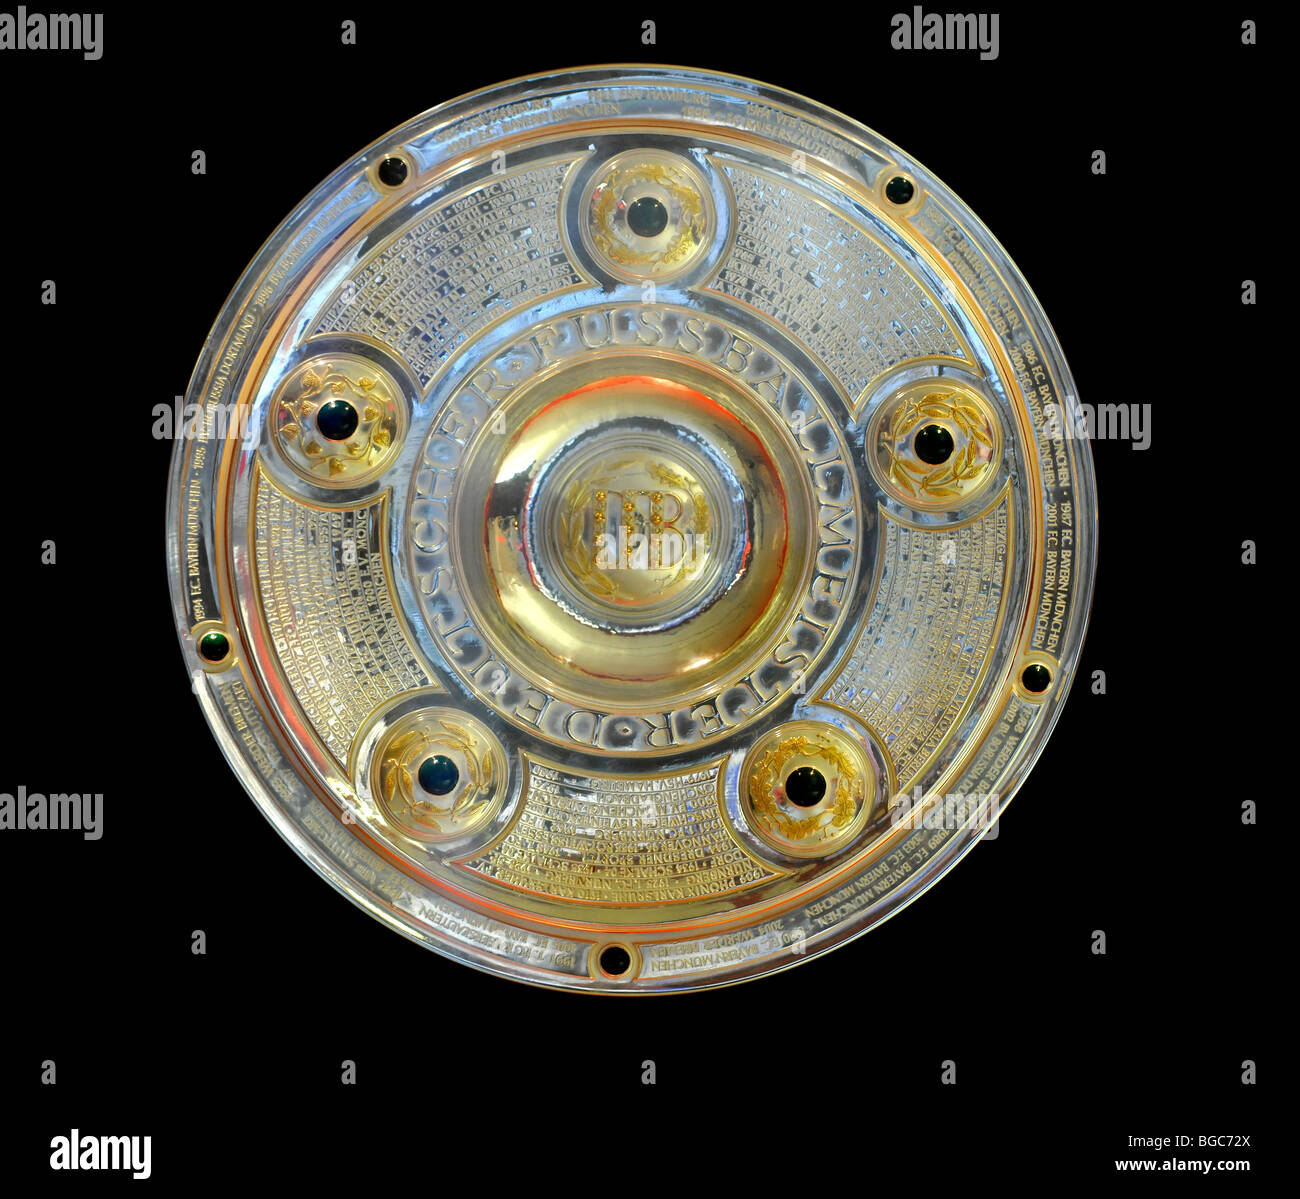 Meisterschale, Deutsche Bundesliga ligue allemande de football Championship Trophy, cut-out Banque D'Images